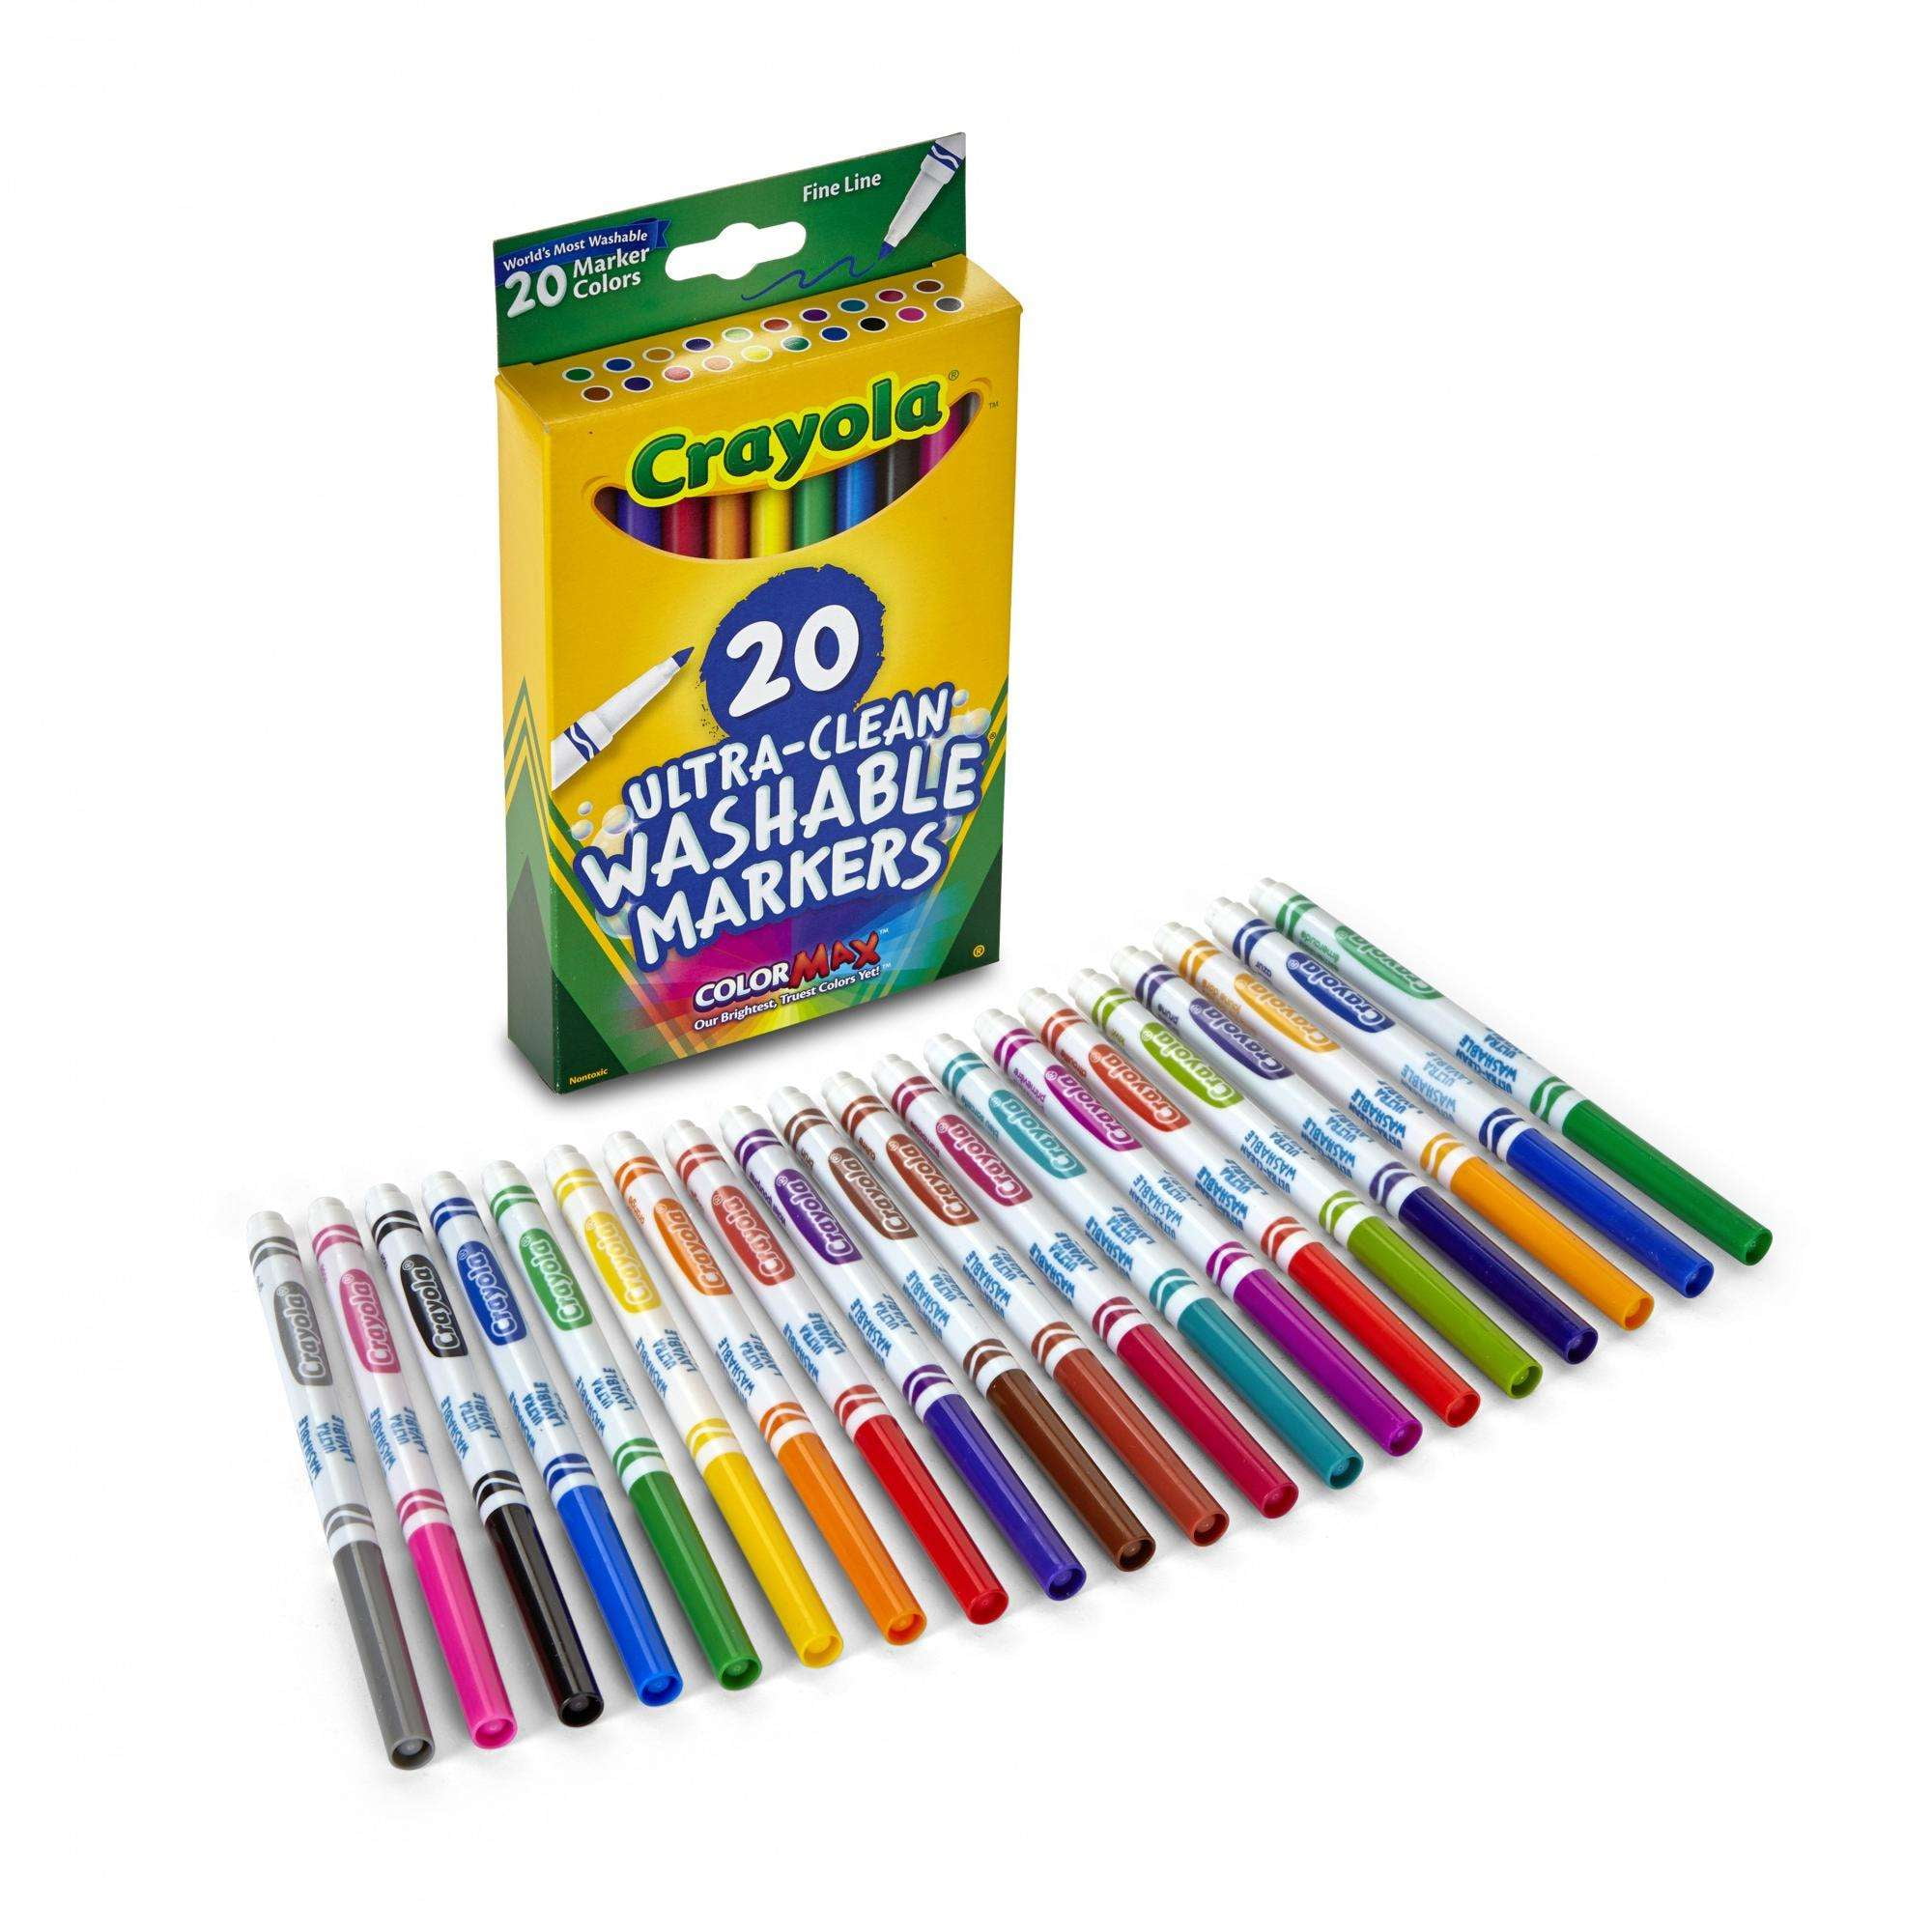 Crayola Washable Marker Set – STL PRO, Inc.